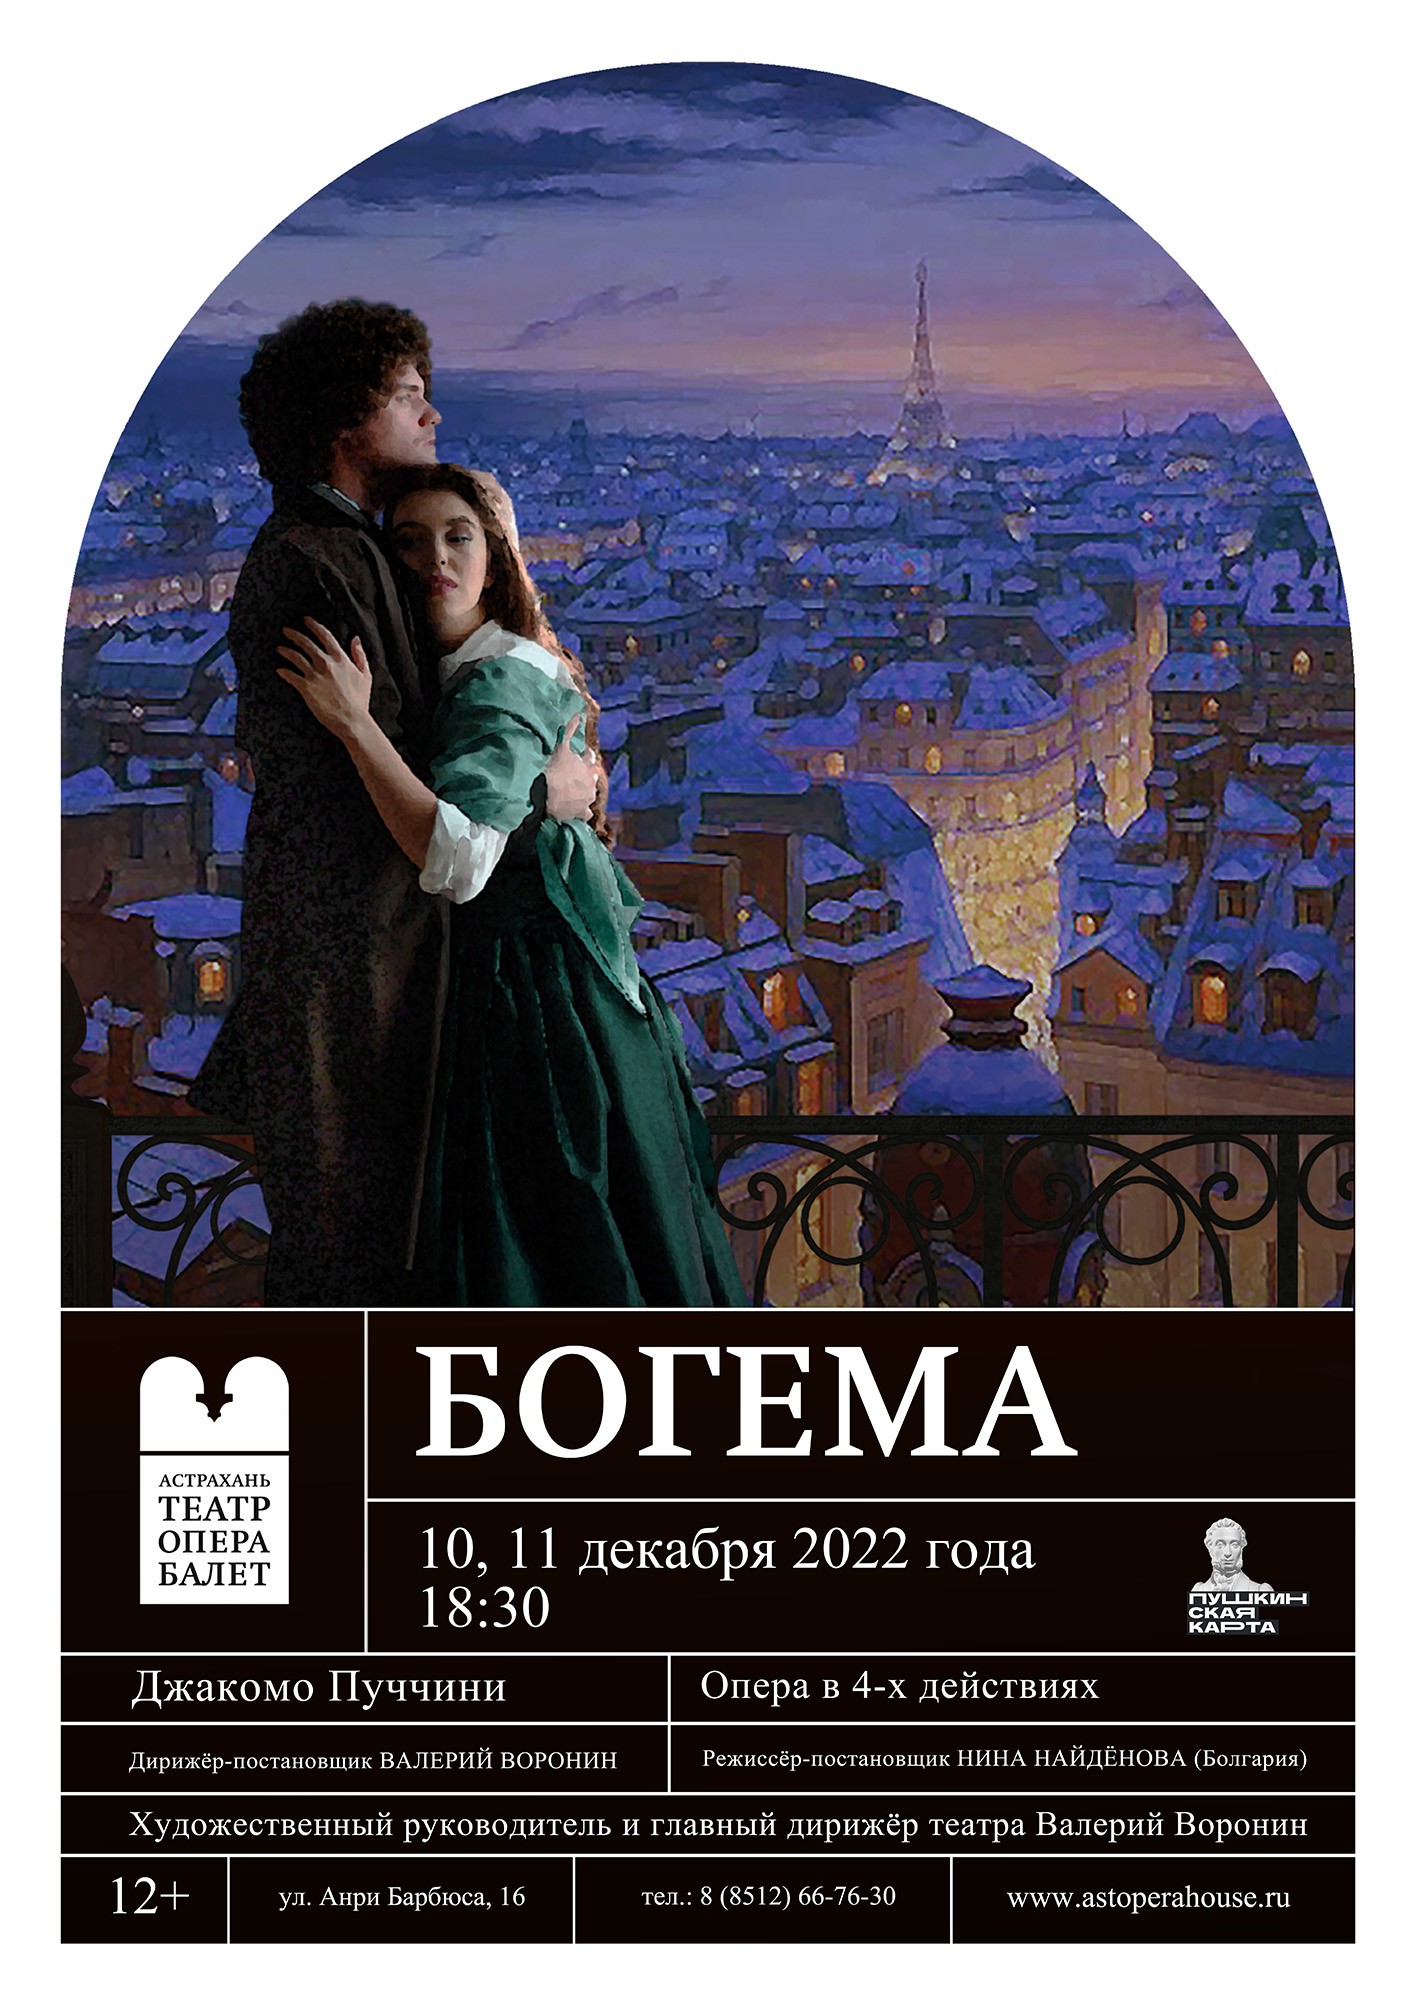 Опера"Богема"